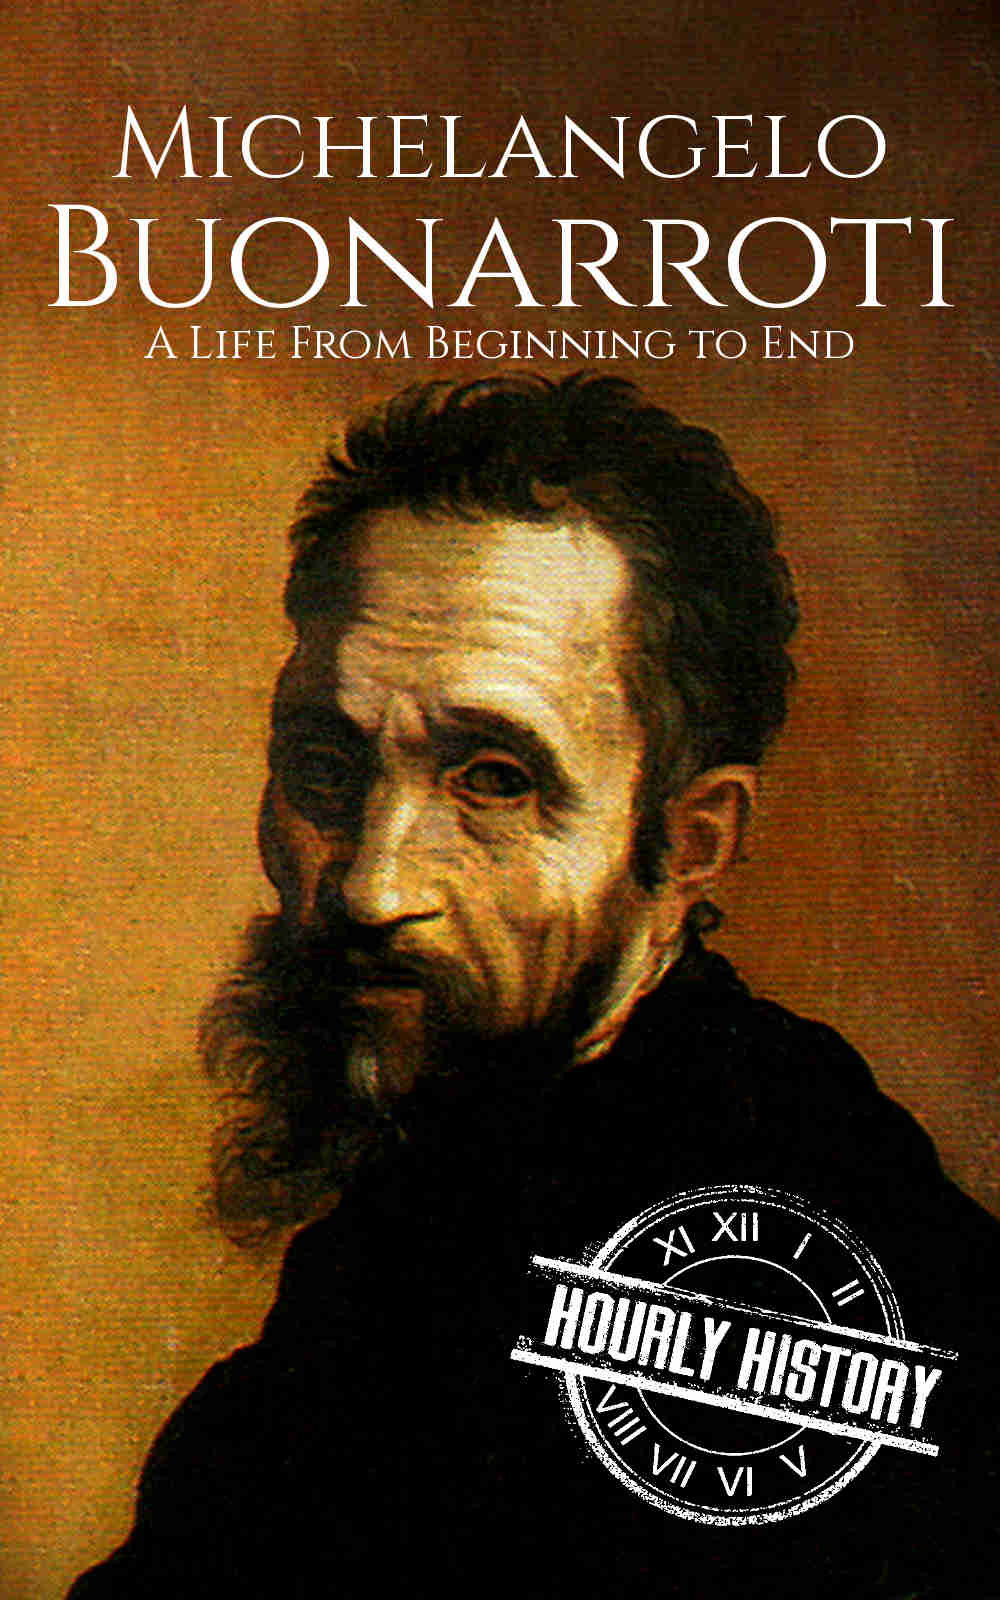 Book cover for Michelangelo Buonarroti